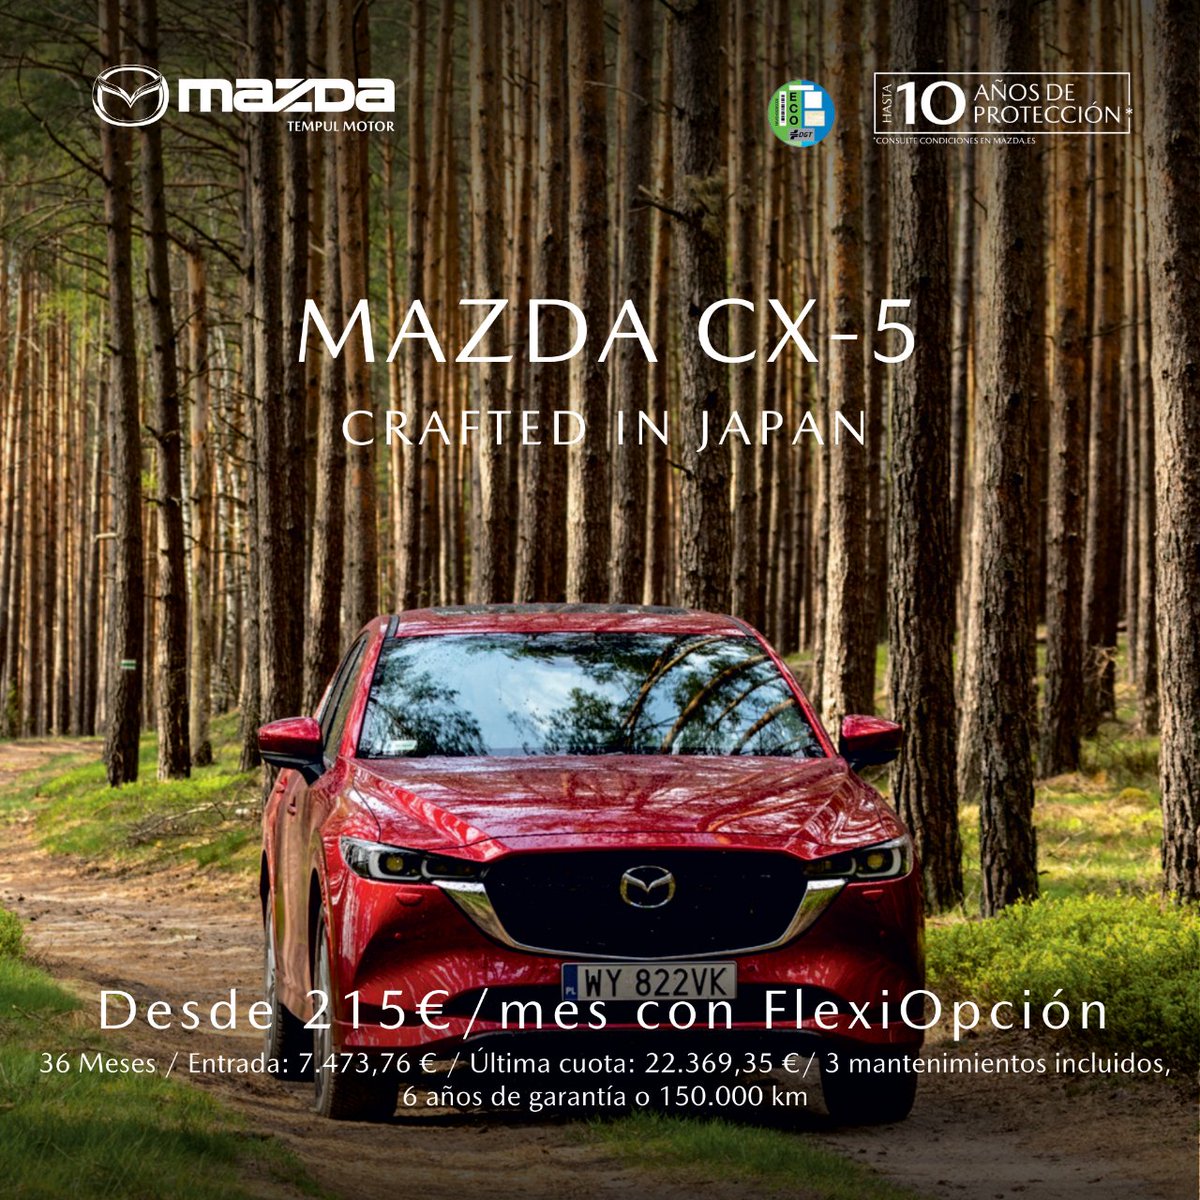 ¡Diseñado para familias y aventureros! 🚙

Así es el Nuevo Mazda CX-5 2023 e-SKYACTIV G MHEV 2.0 165CV Center-Line Plus por 215€/mes con Flexiopción*.

✨ ¡Descúbrelo en Tempul Motor Mazda!
—
*Consulta condiciones

#Mazda #MazdaCX5 #CX5 #Jerez #Cádiz